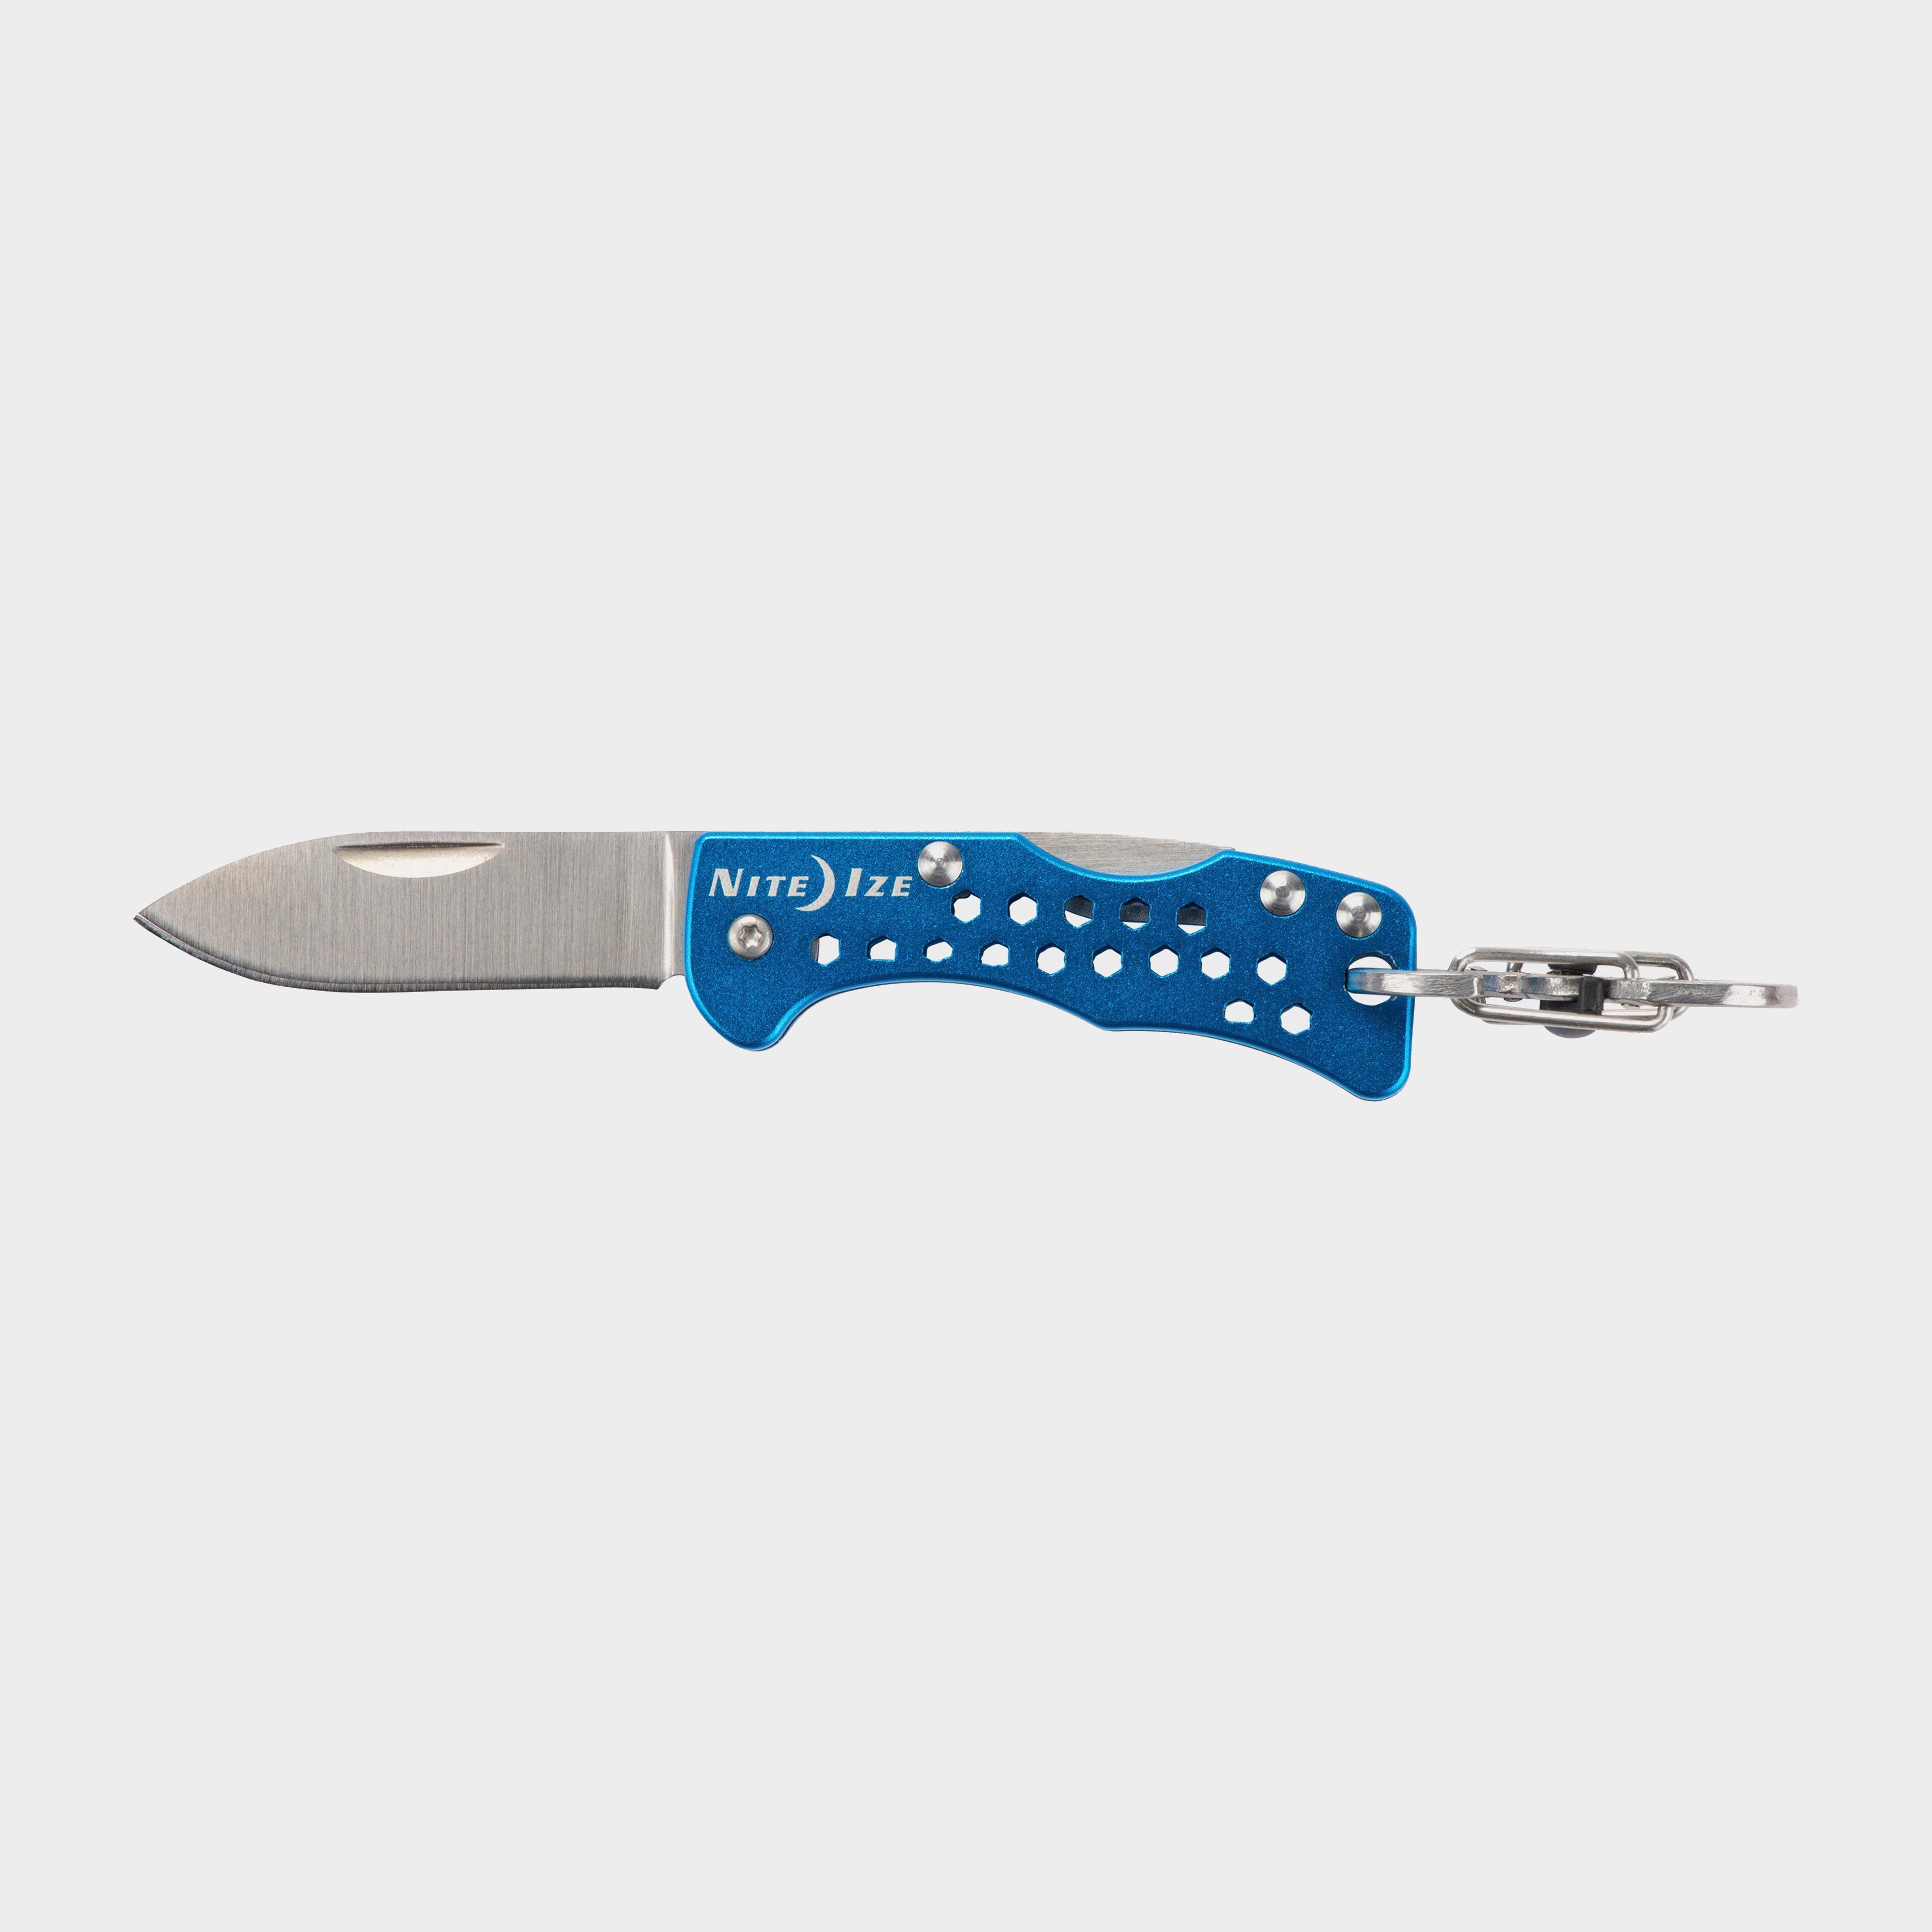 Niteize Doohickey Keychain Pocket Knife, Blue